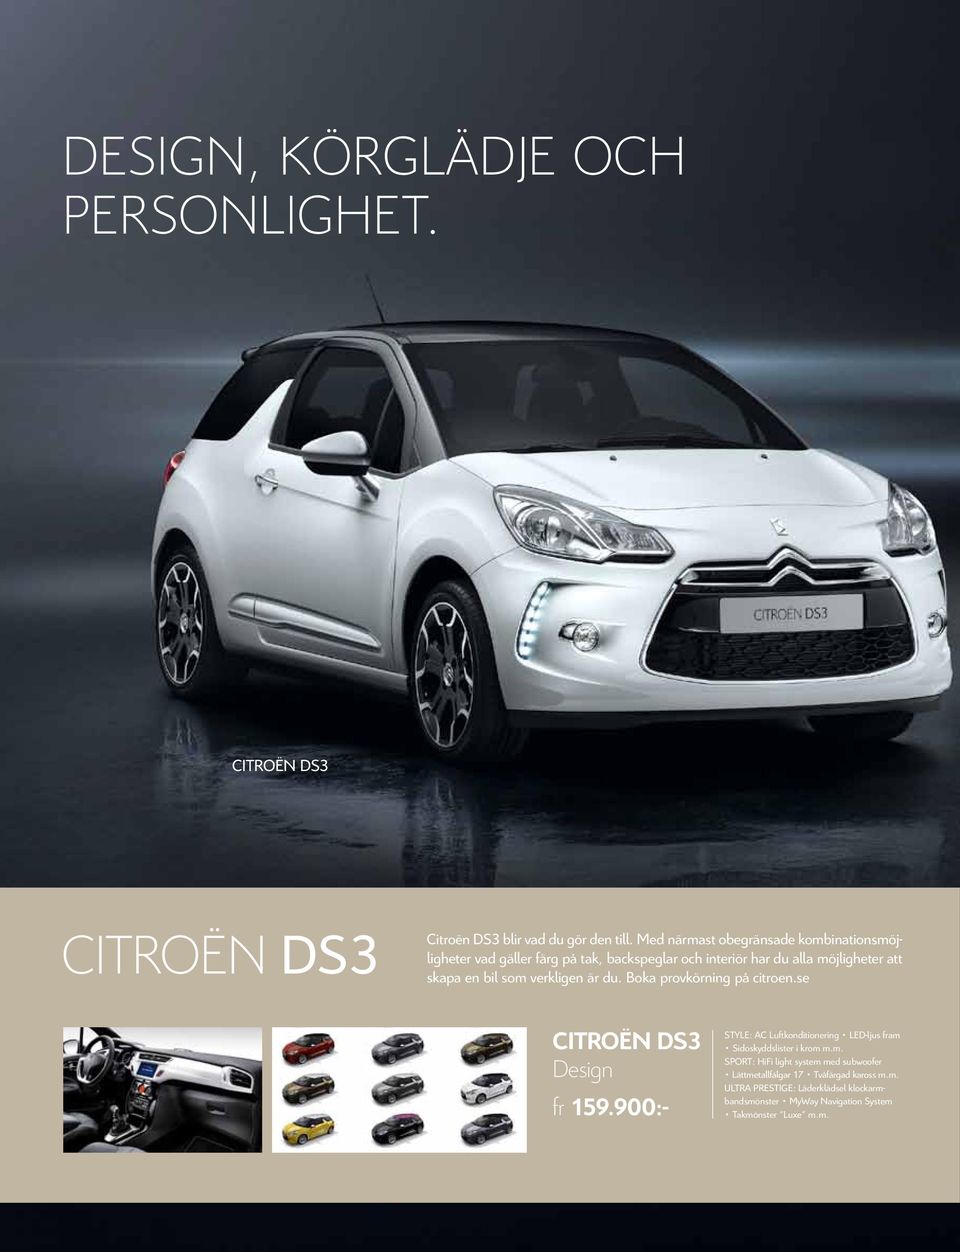 verkligen är du. Boka provkörning på citroen.se Citroën DS3 Design fr 159.